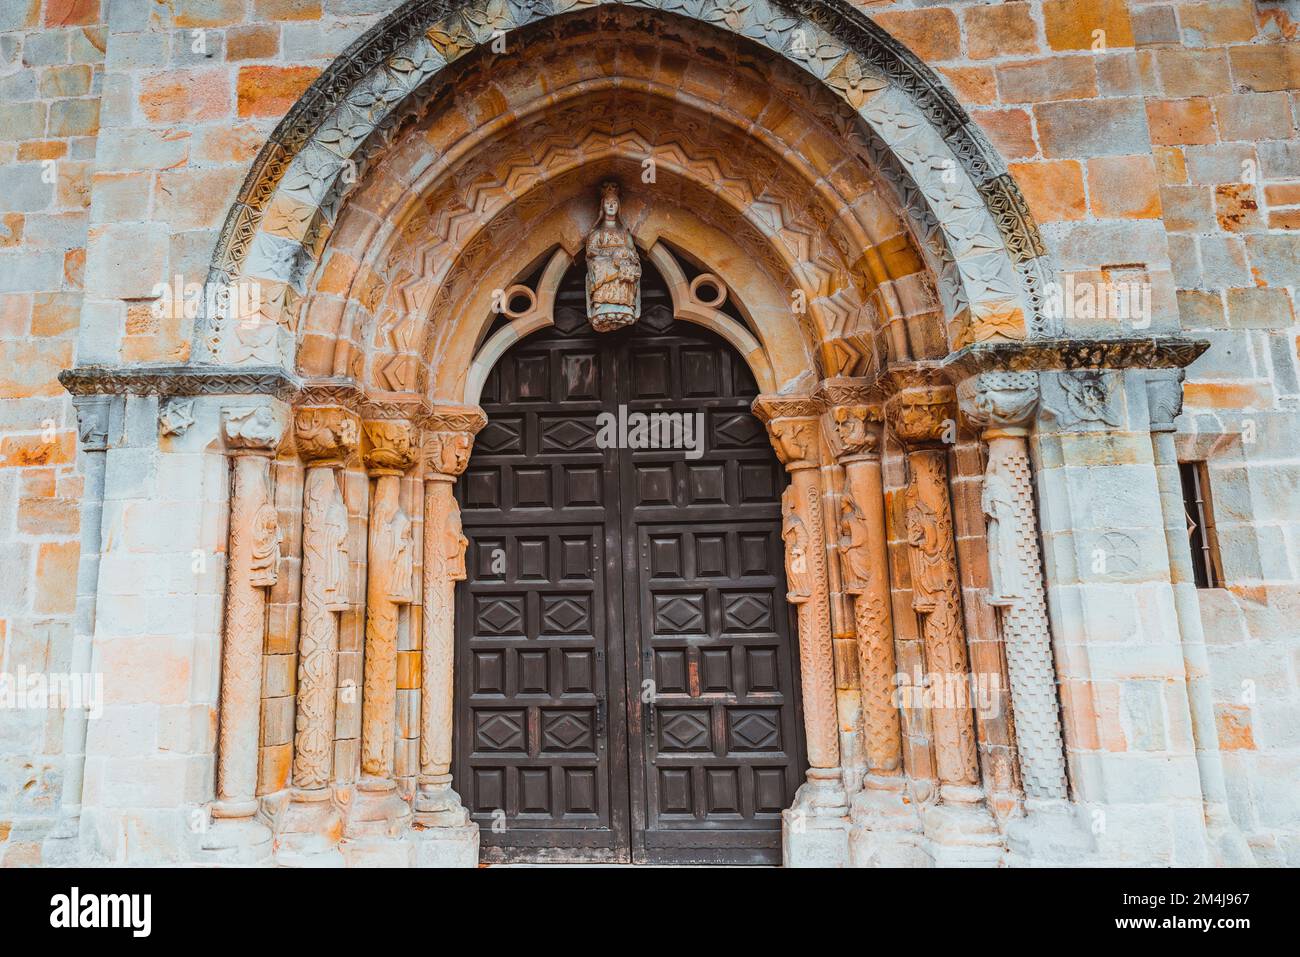 Portaldetails. Iglesia de Santa María de la Oliva ist eine Steinkirche aus dem 13.. Jahrhundert in Villaviciosa. Die gotische Steinkirche wurde auf Spanisch fertiggestellt Stockfoto